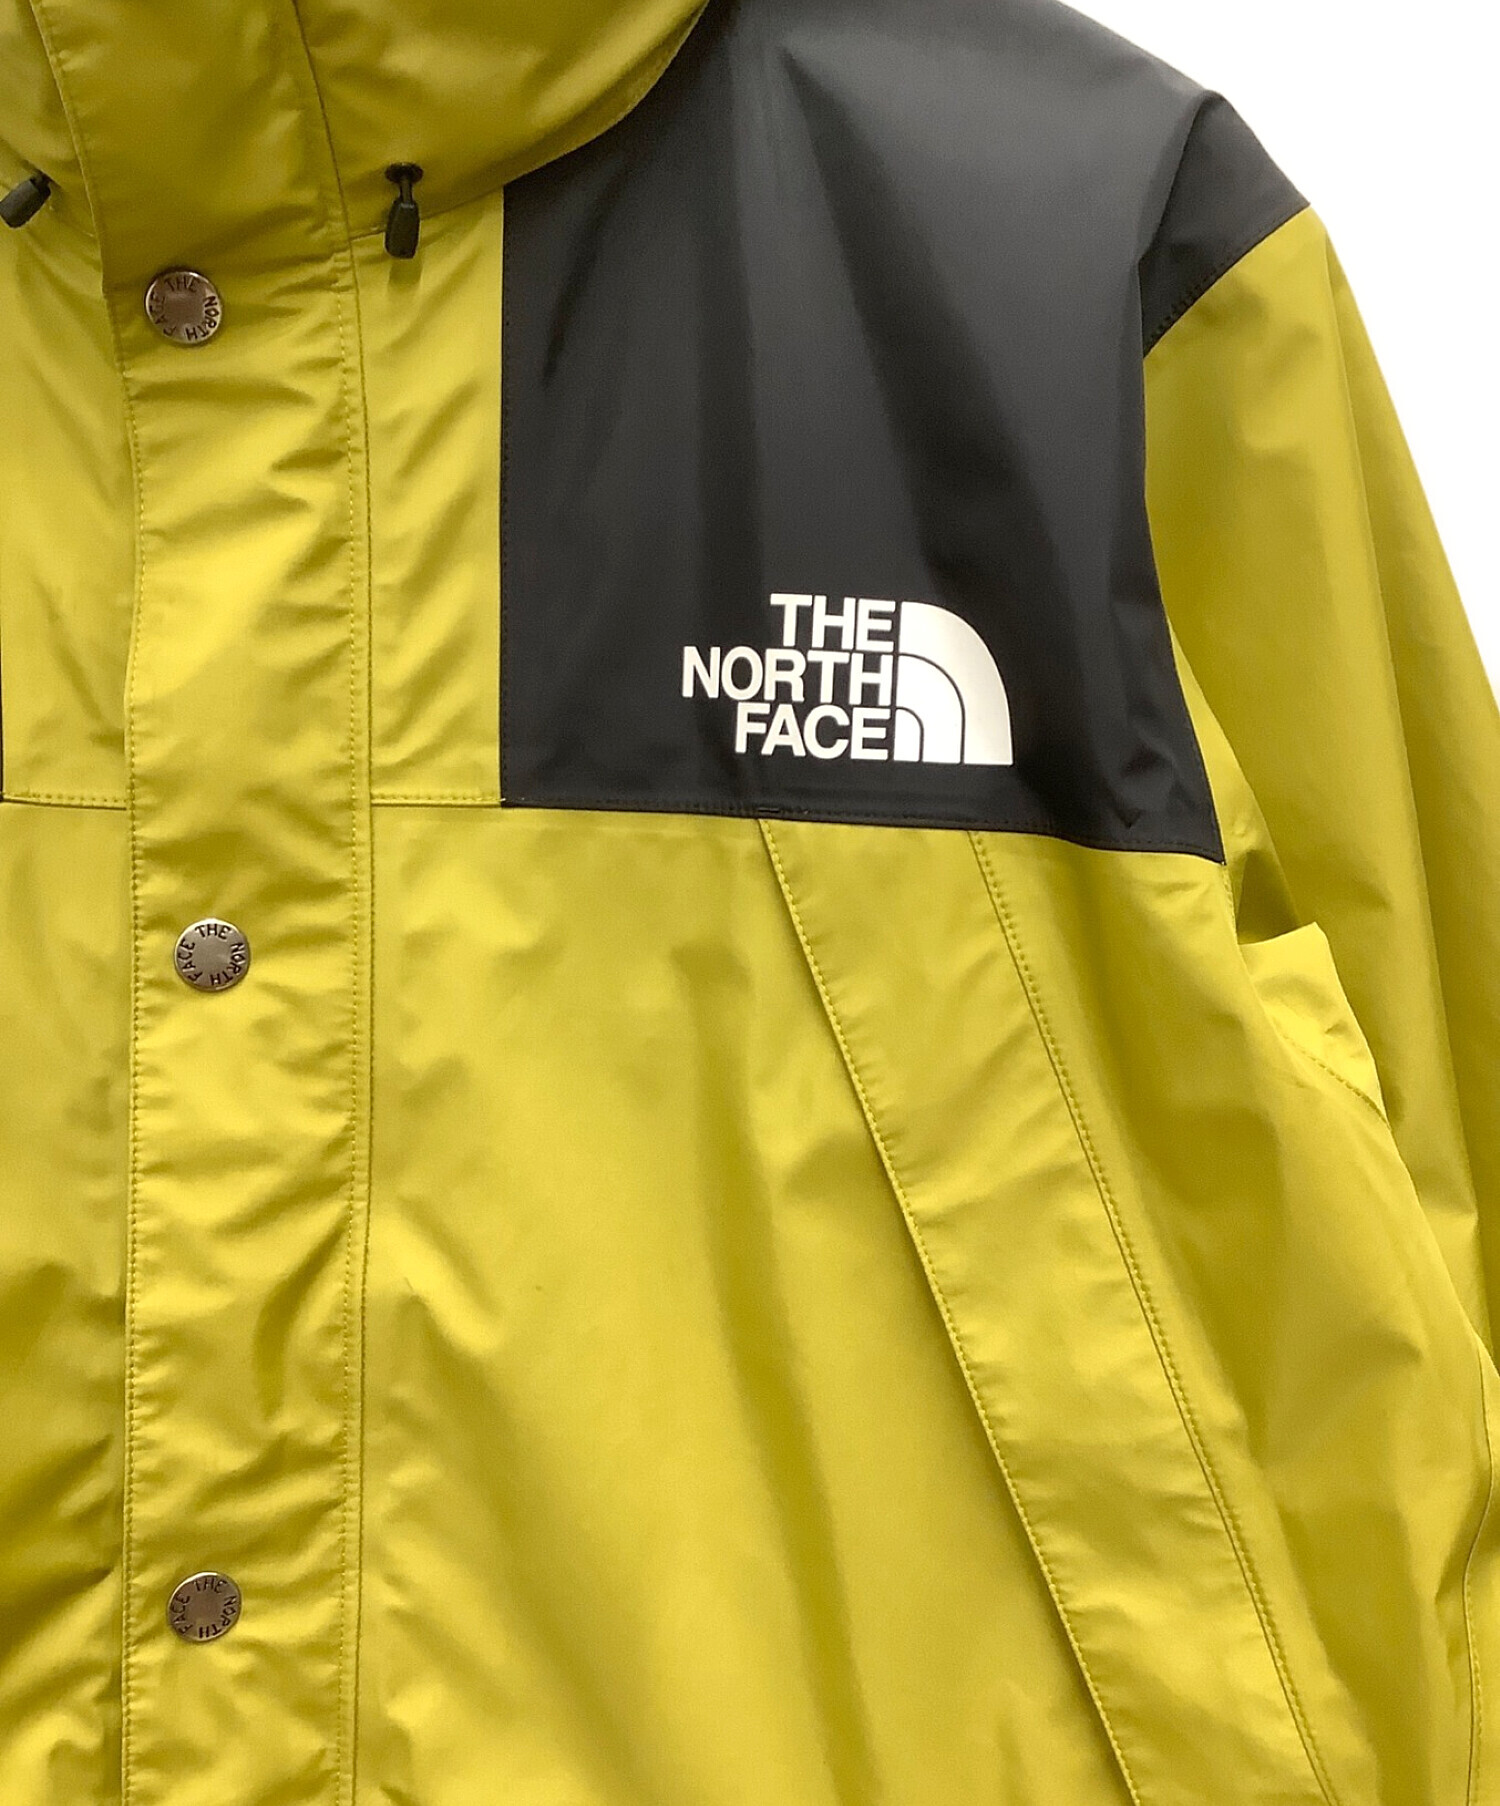 THE NORTH FACE (ザ ノース フェイス) マウンテンレインテックスジャケット マッチャグリーン サイズ:XL